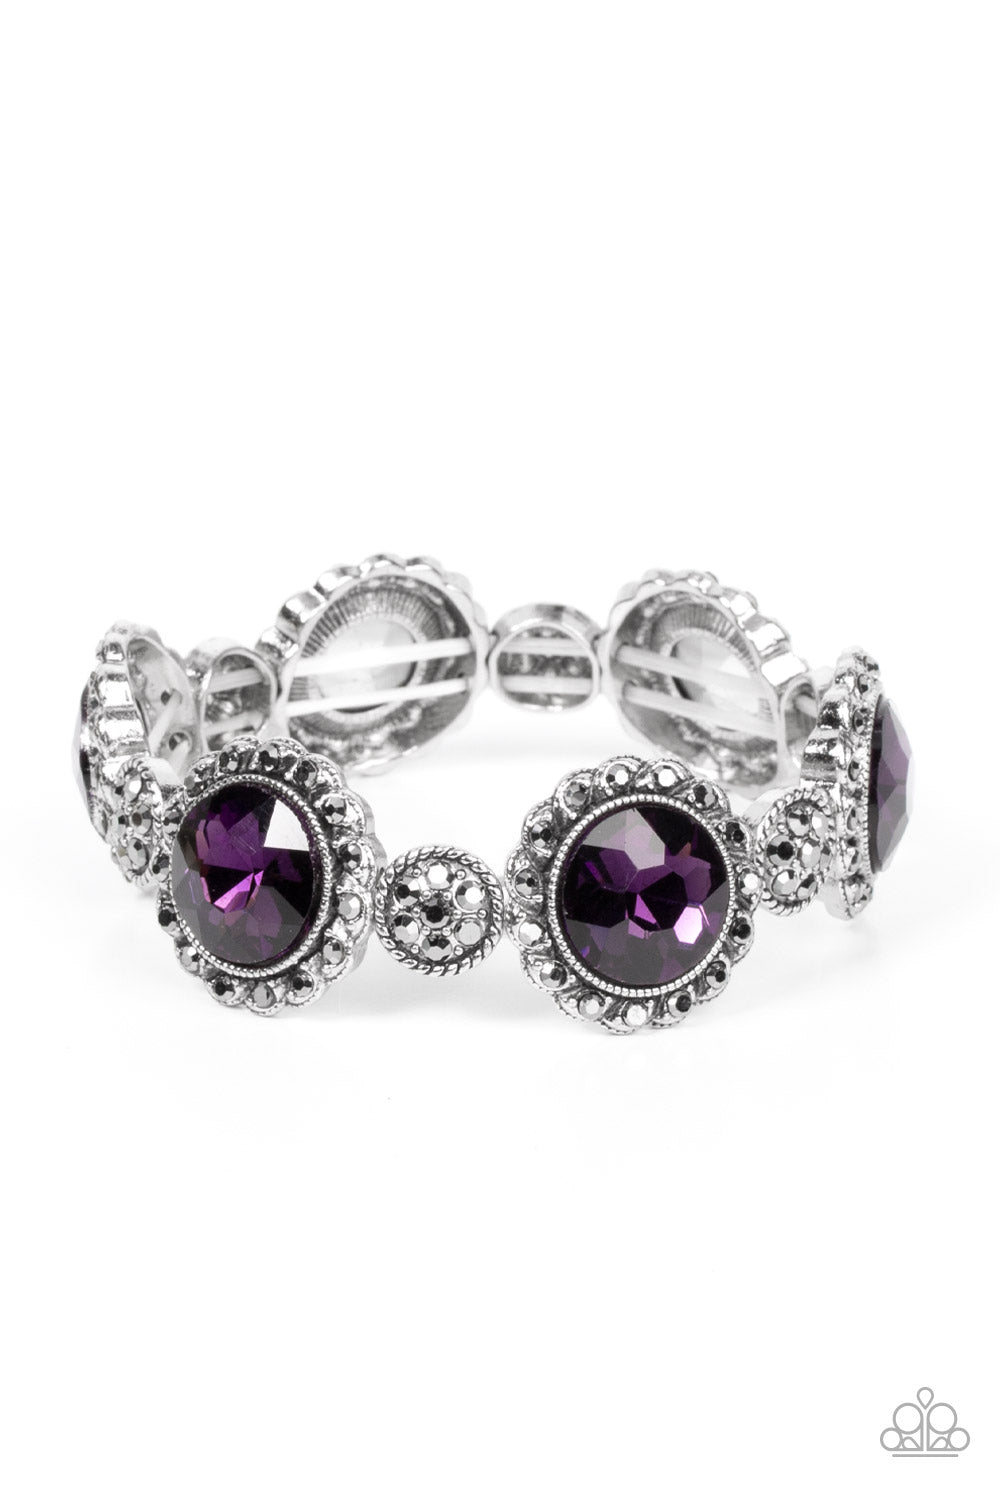 Palace Property - Purple Bracelet - Paparazzi Accessories - Paparazzi Accessories 